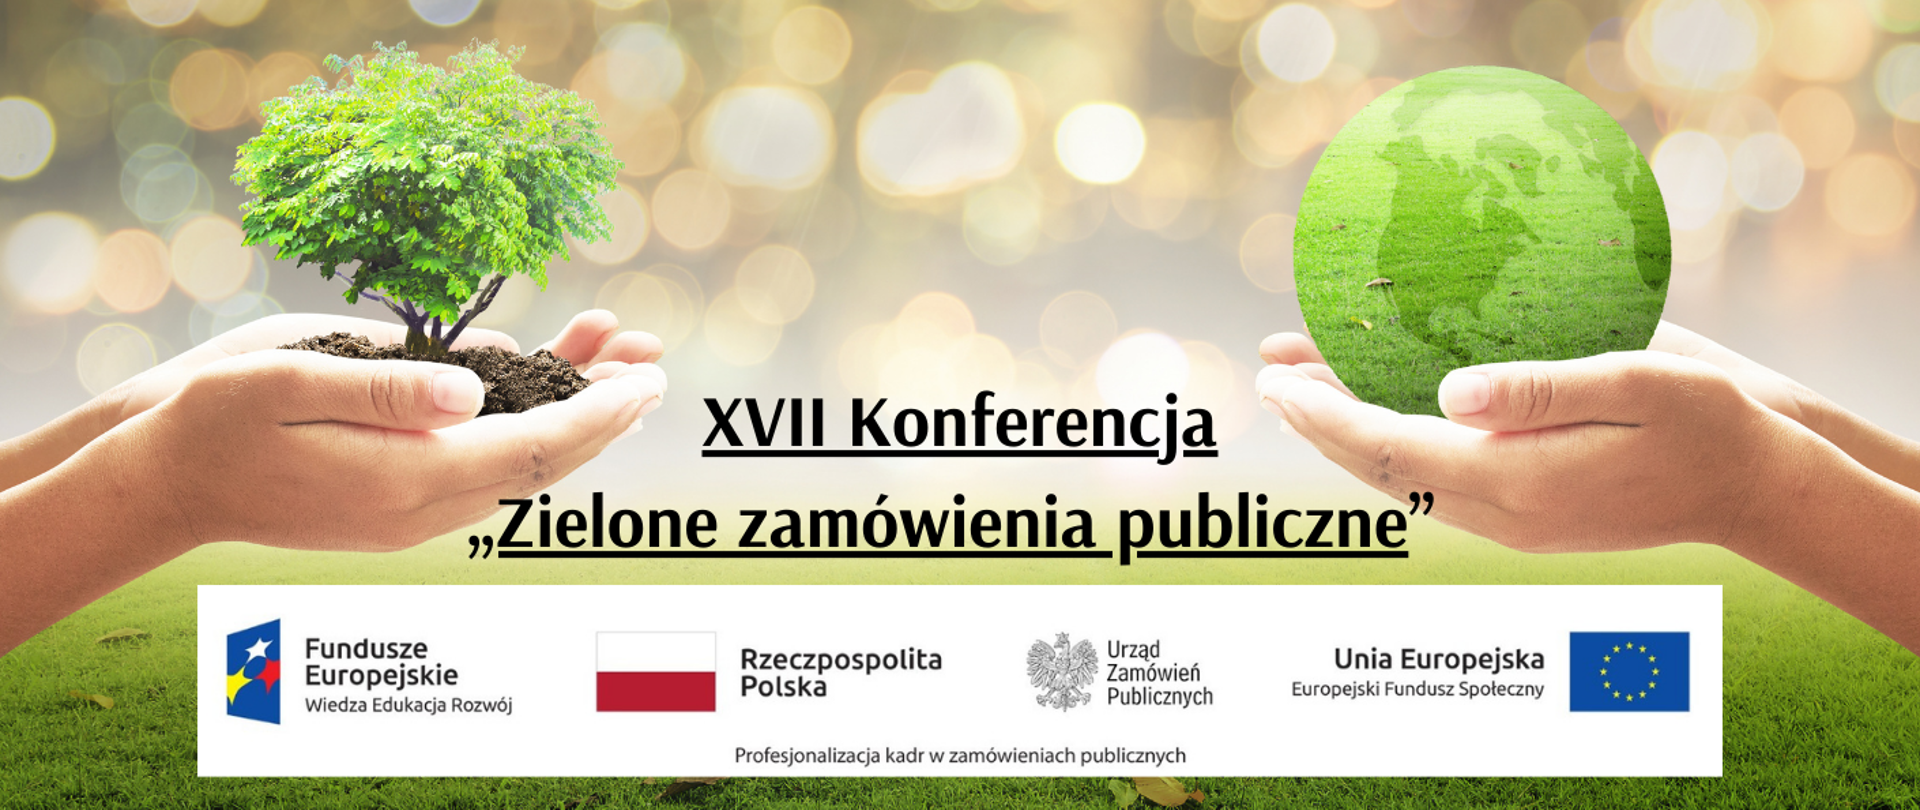 XVII Konferencja - Zielone zamówienia publiczne